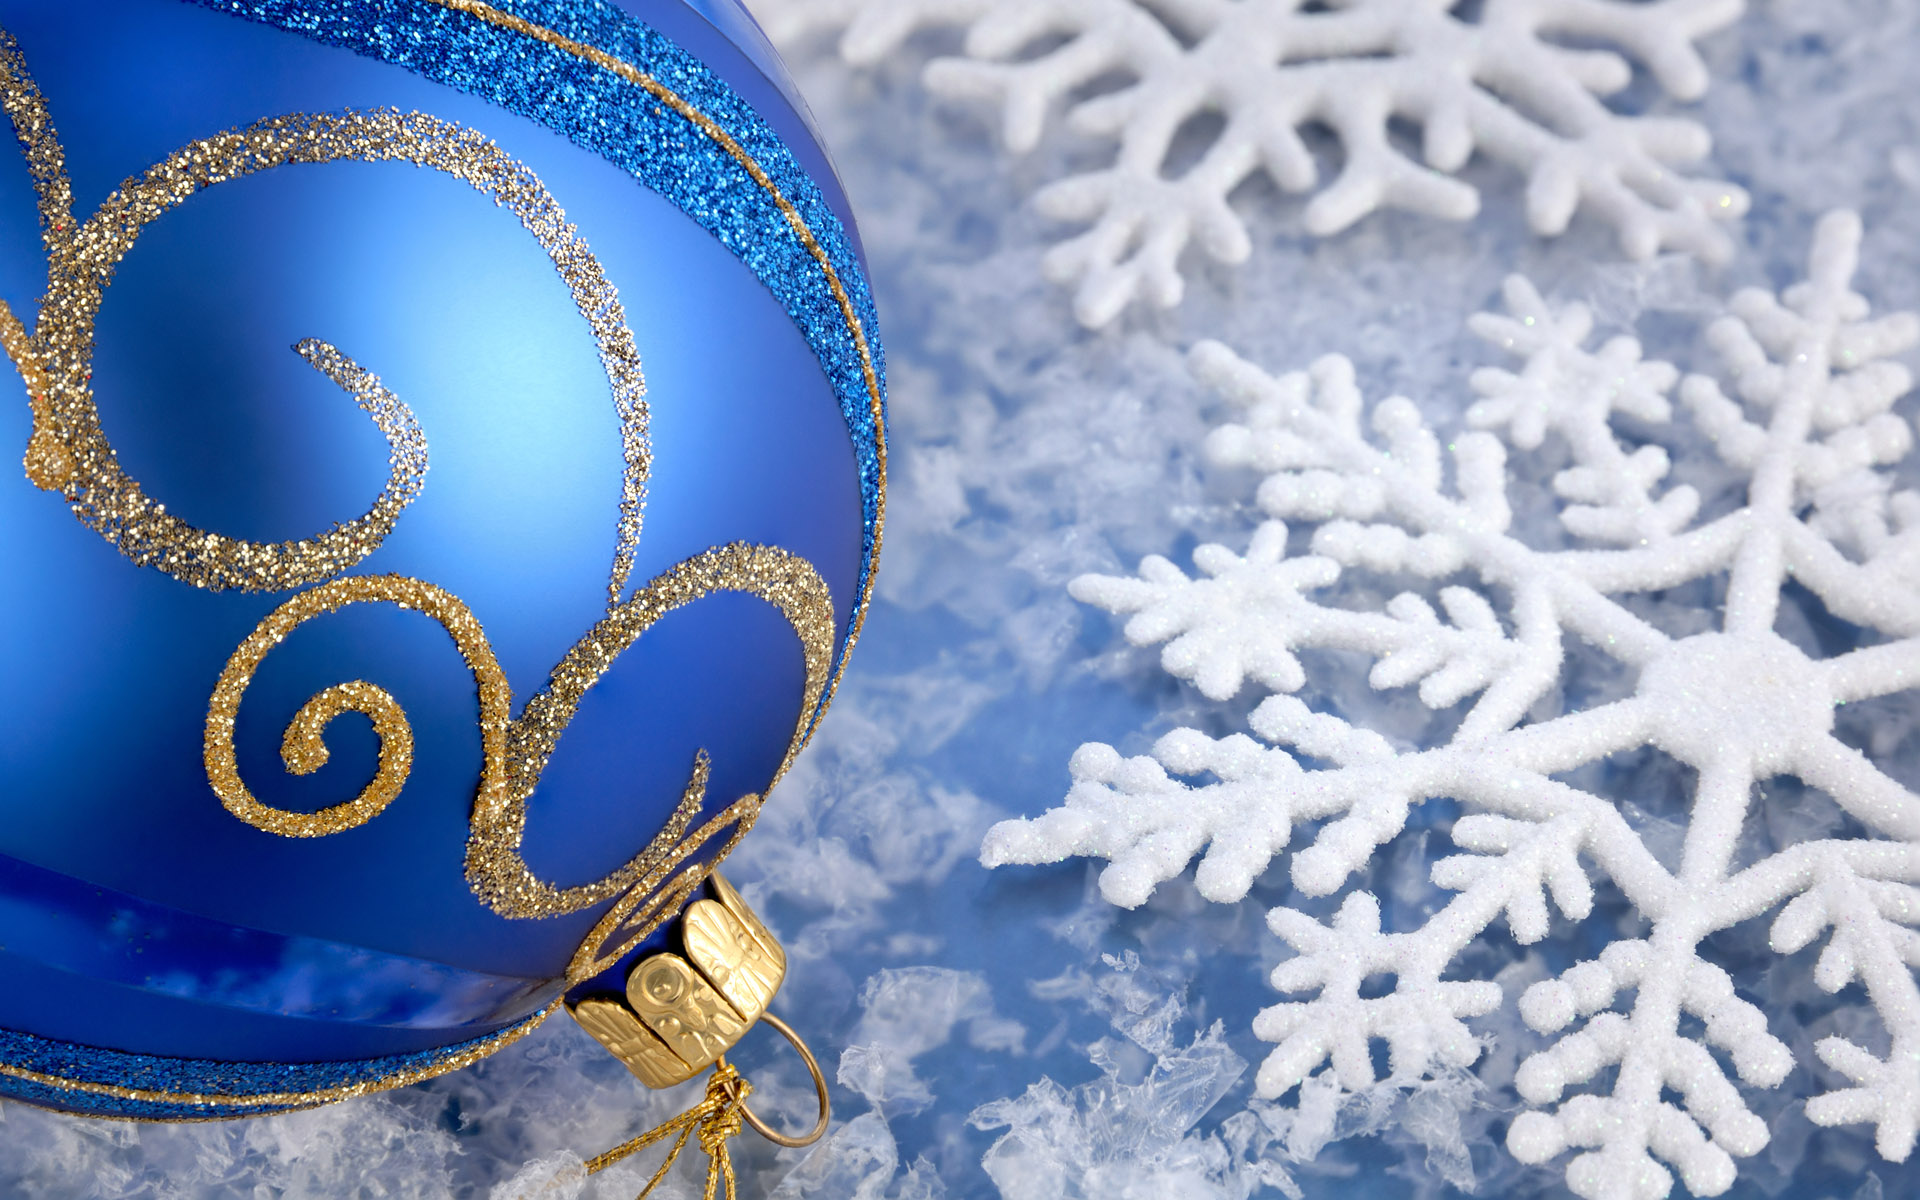 Украшения новый год снежинки Decoration new year snowflakes без смс